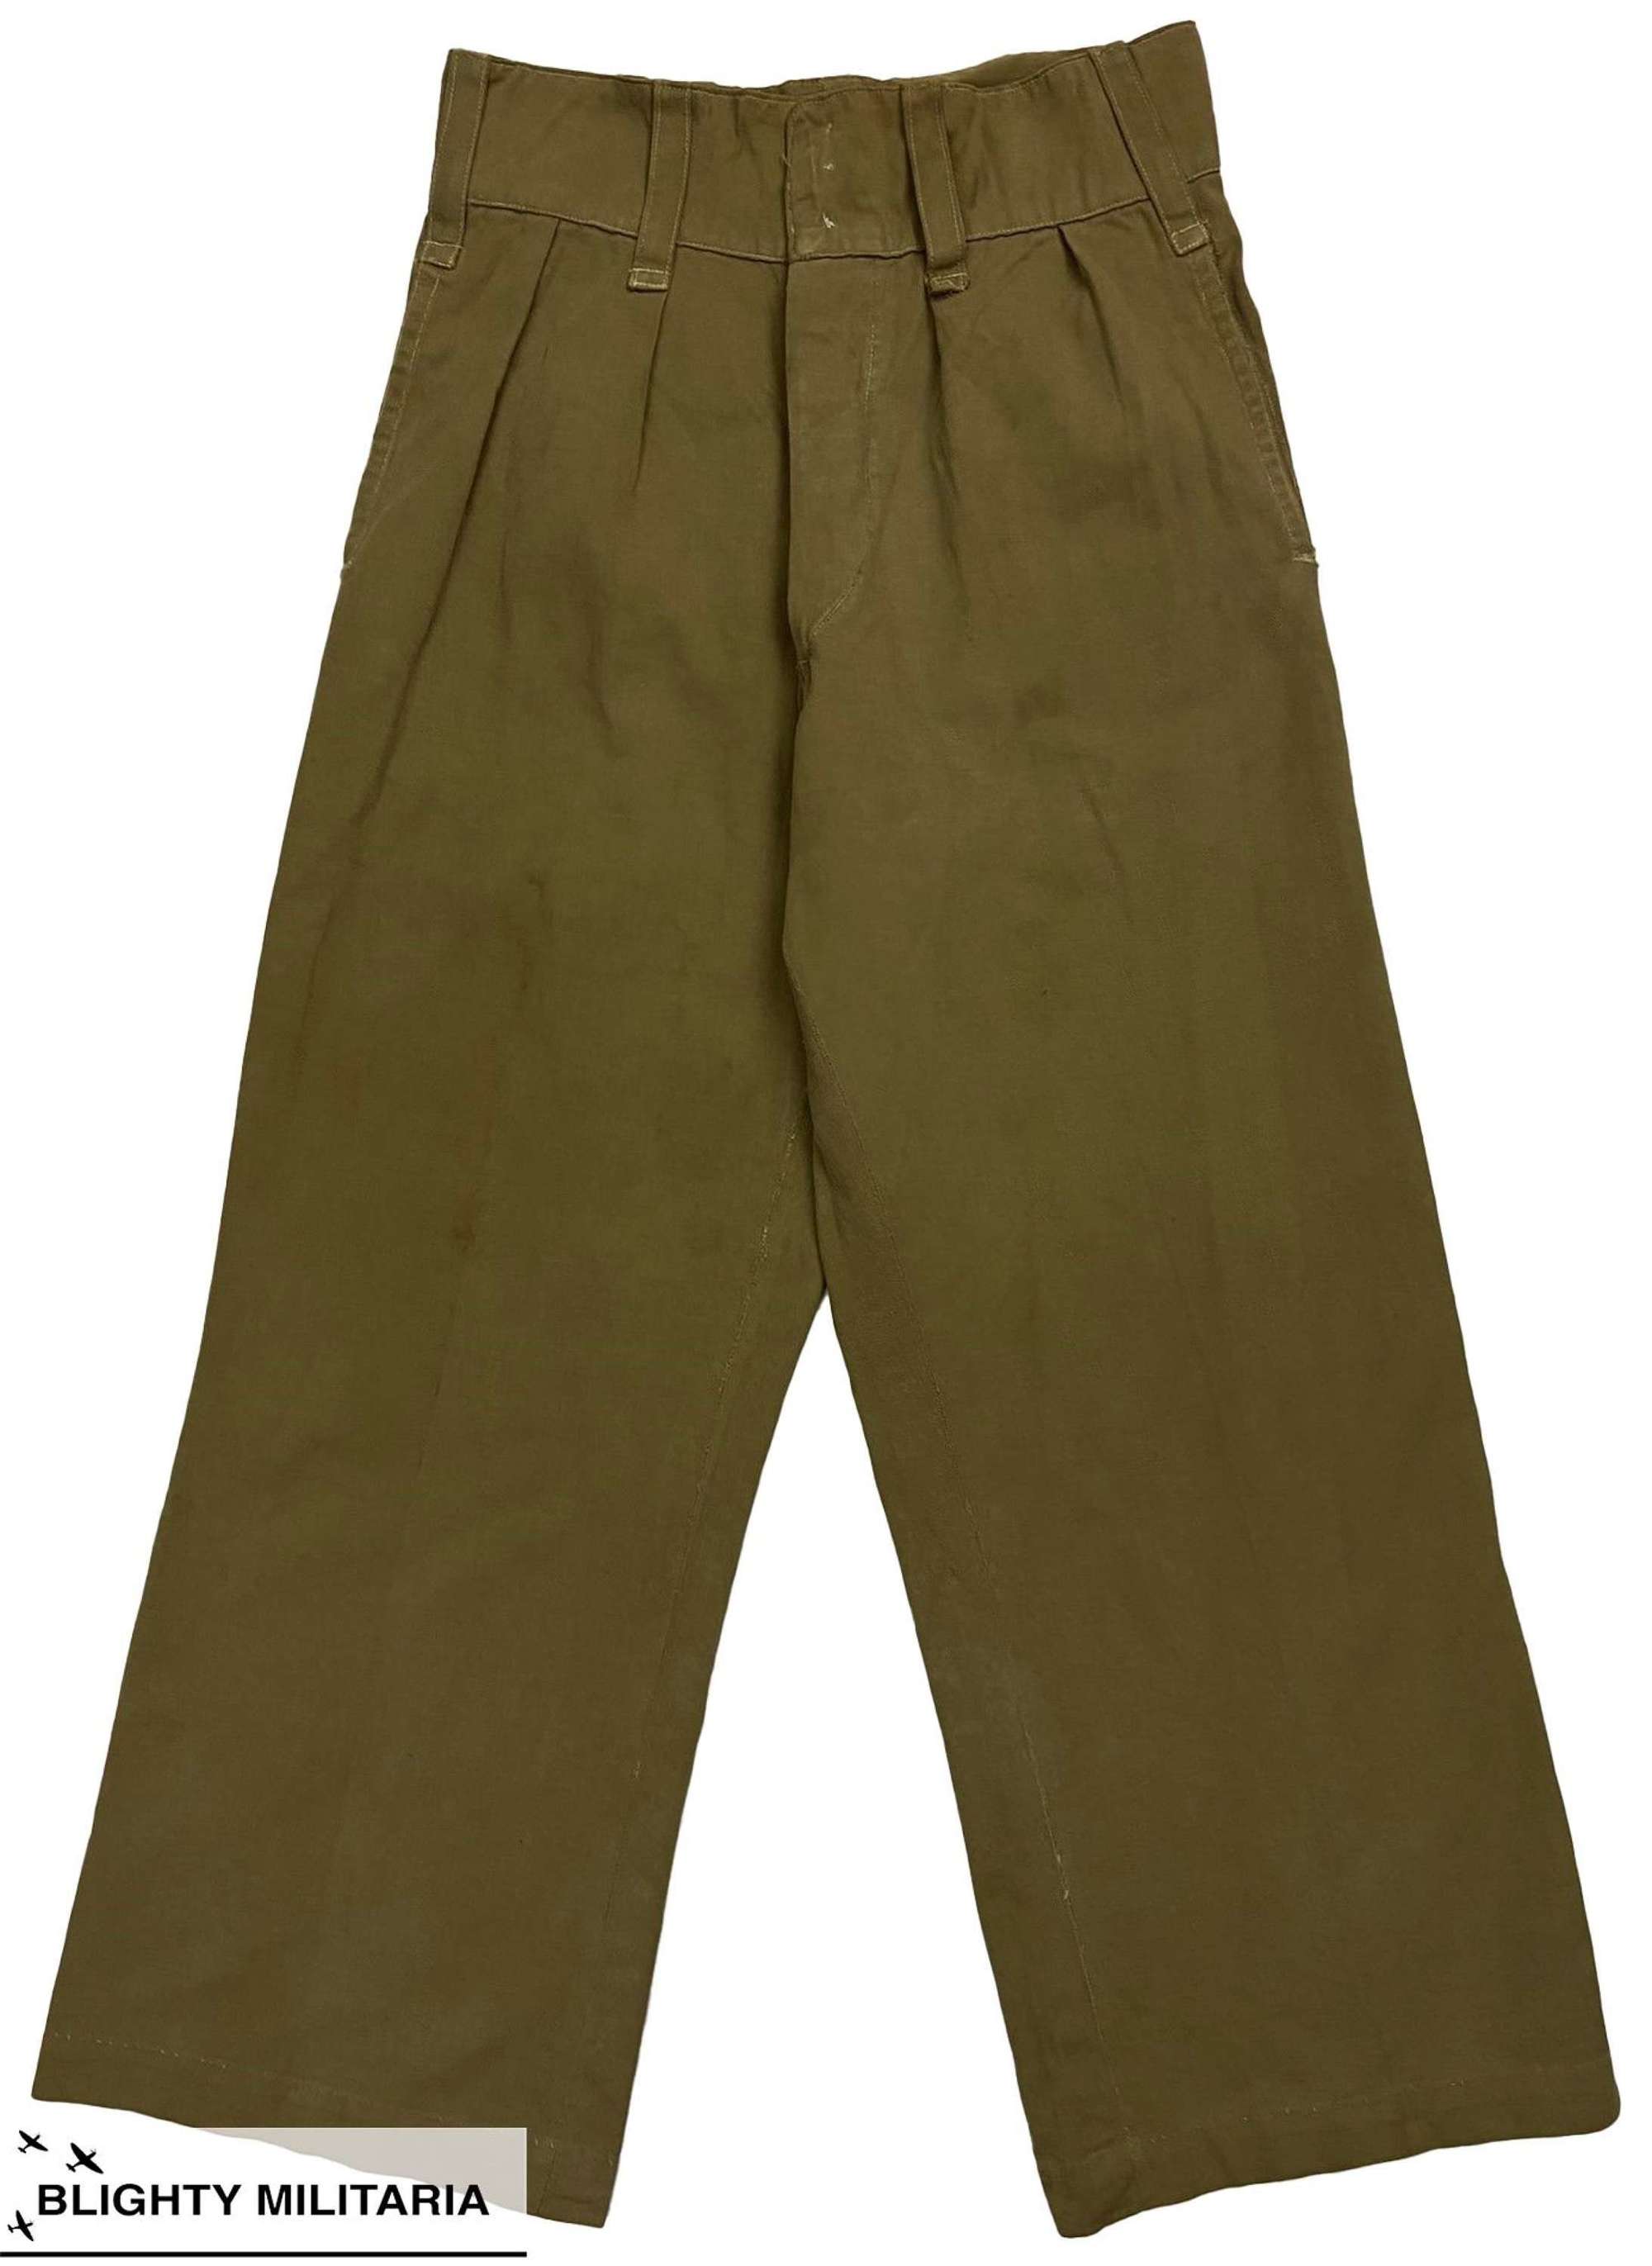 Original 1940s British Army Private Purchase Khaki Drill Trousers